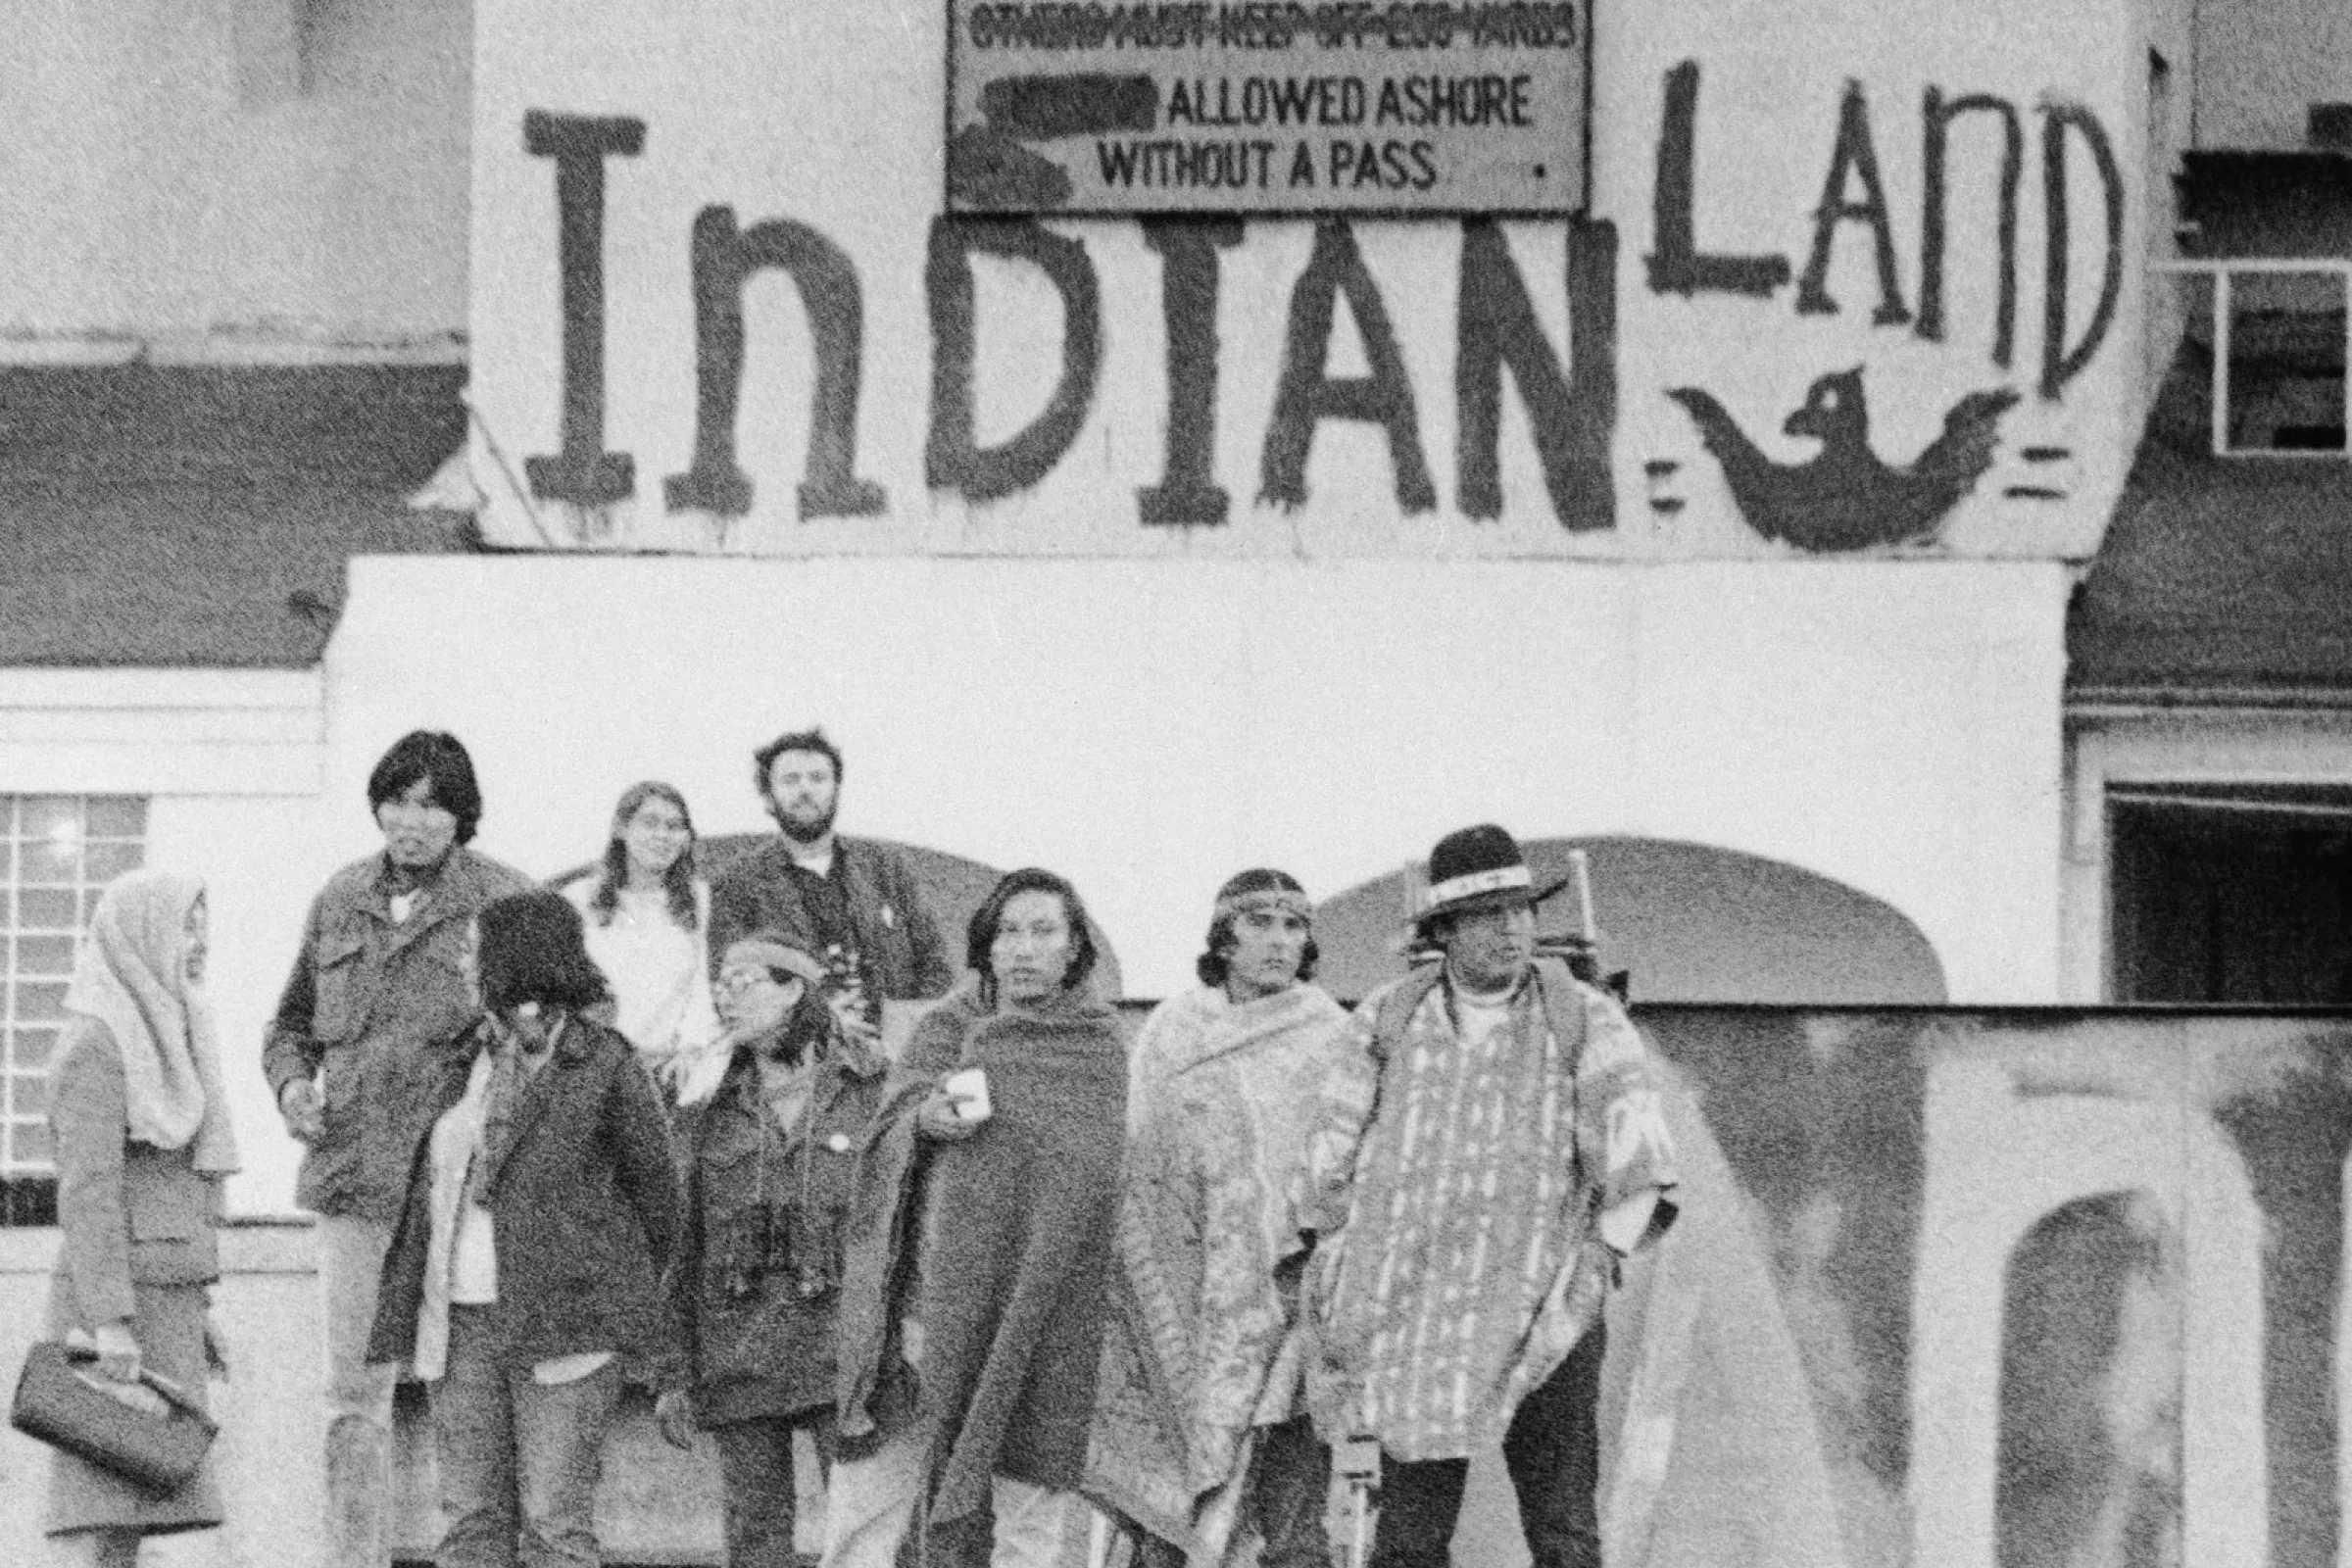 Militants de l'AIM à Alcatraz, 1969